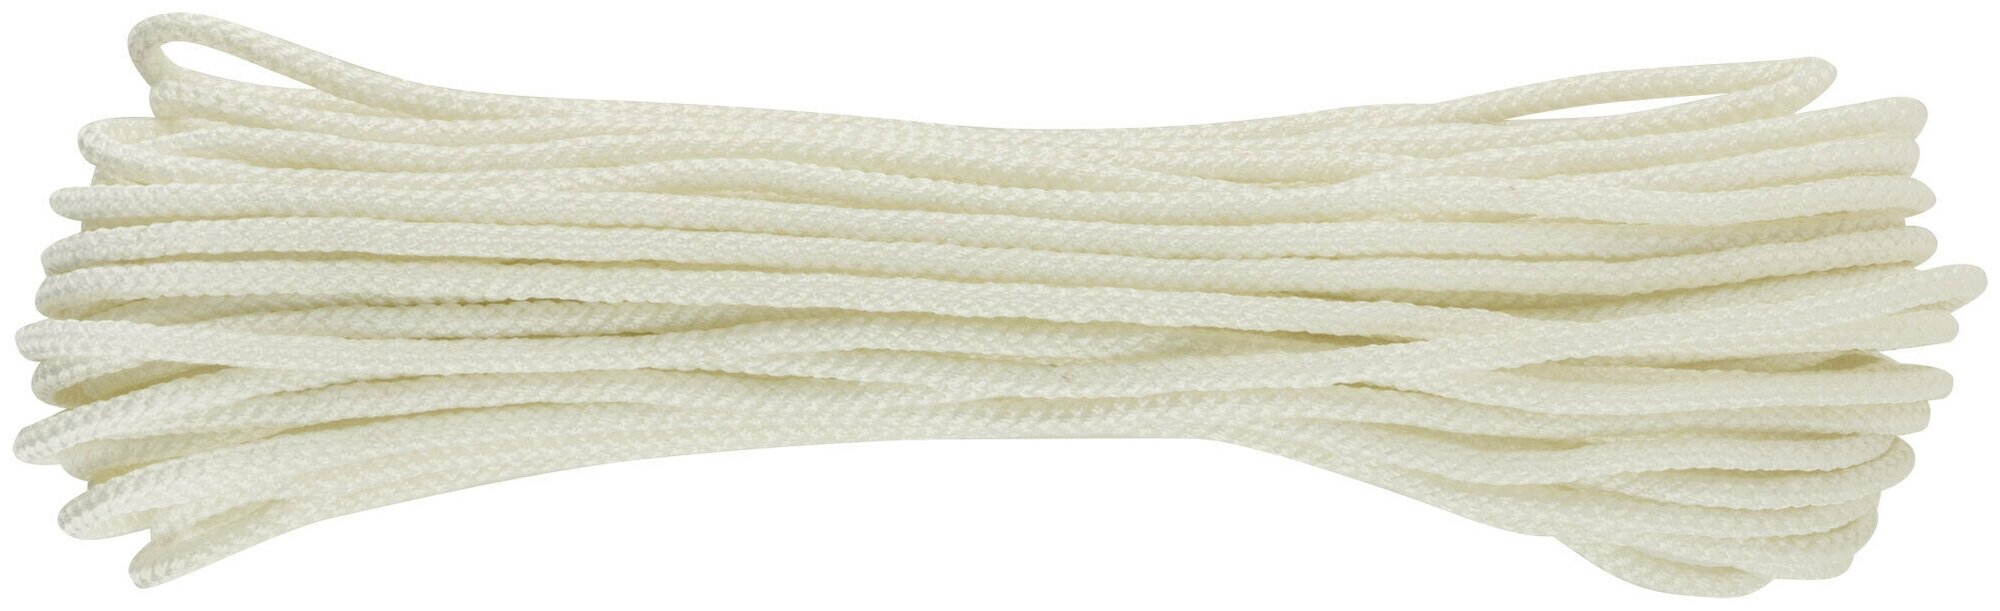 Фал капроновый плетеный 16-ти прядный с сердечником 6 мм х 20 м, р/н= 450 кгс 68416